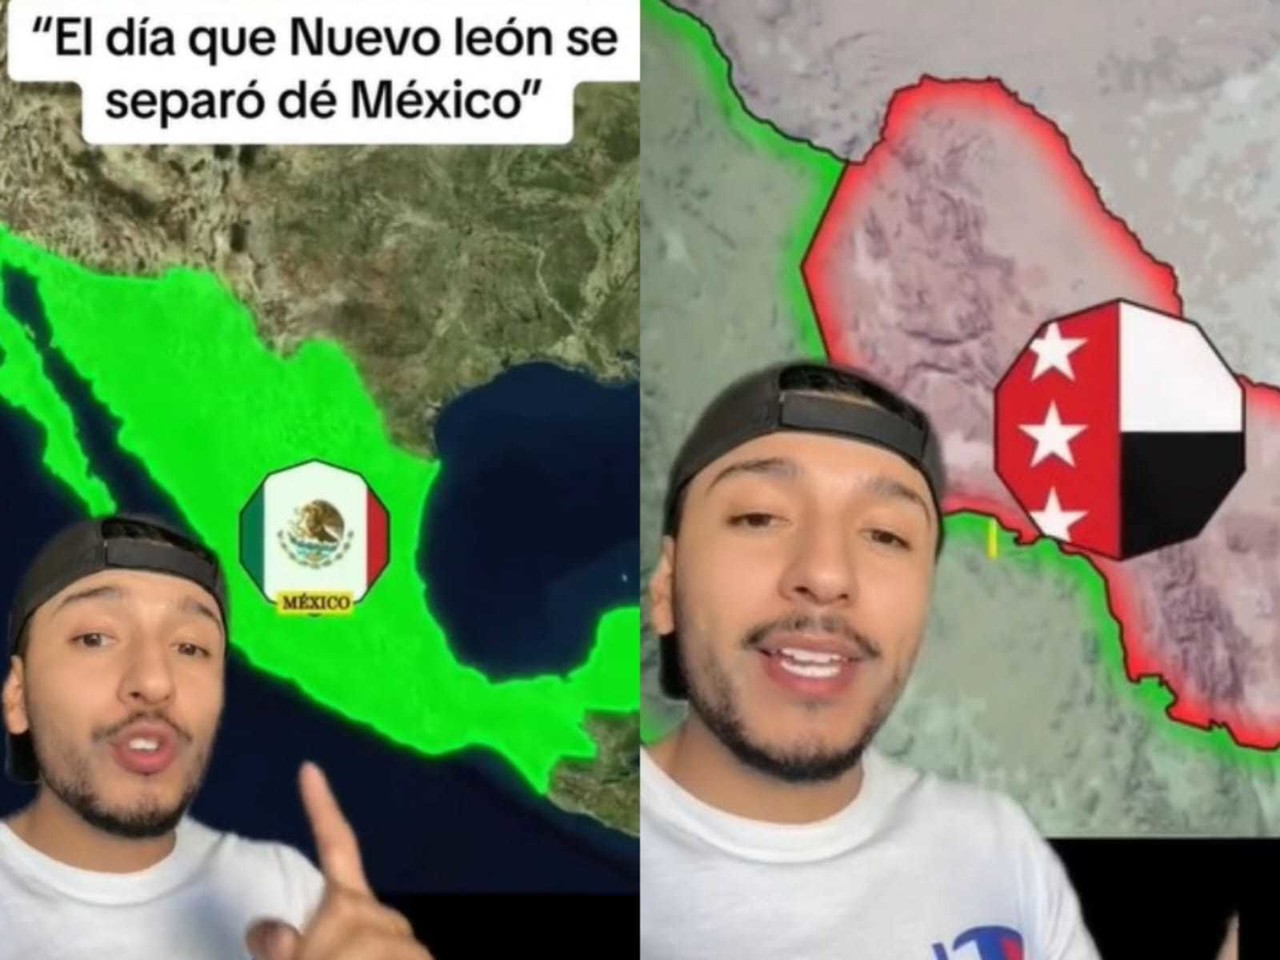 El usuario Osmarus recordó el intento de hacer a Nuevo León un país independiente. Foto: TikTok 0smarus.